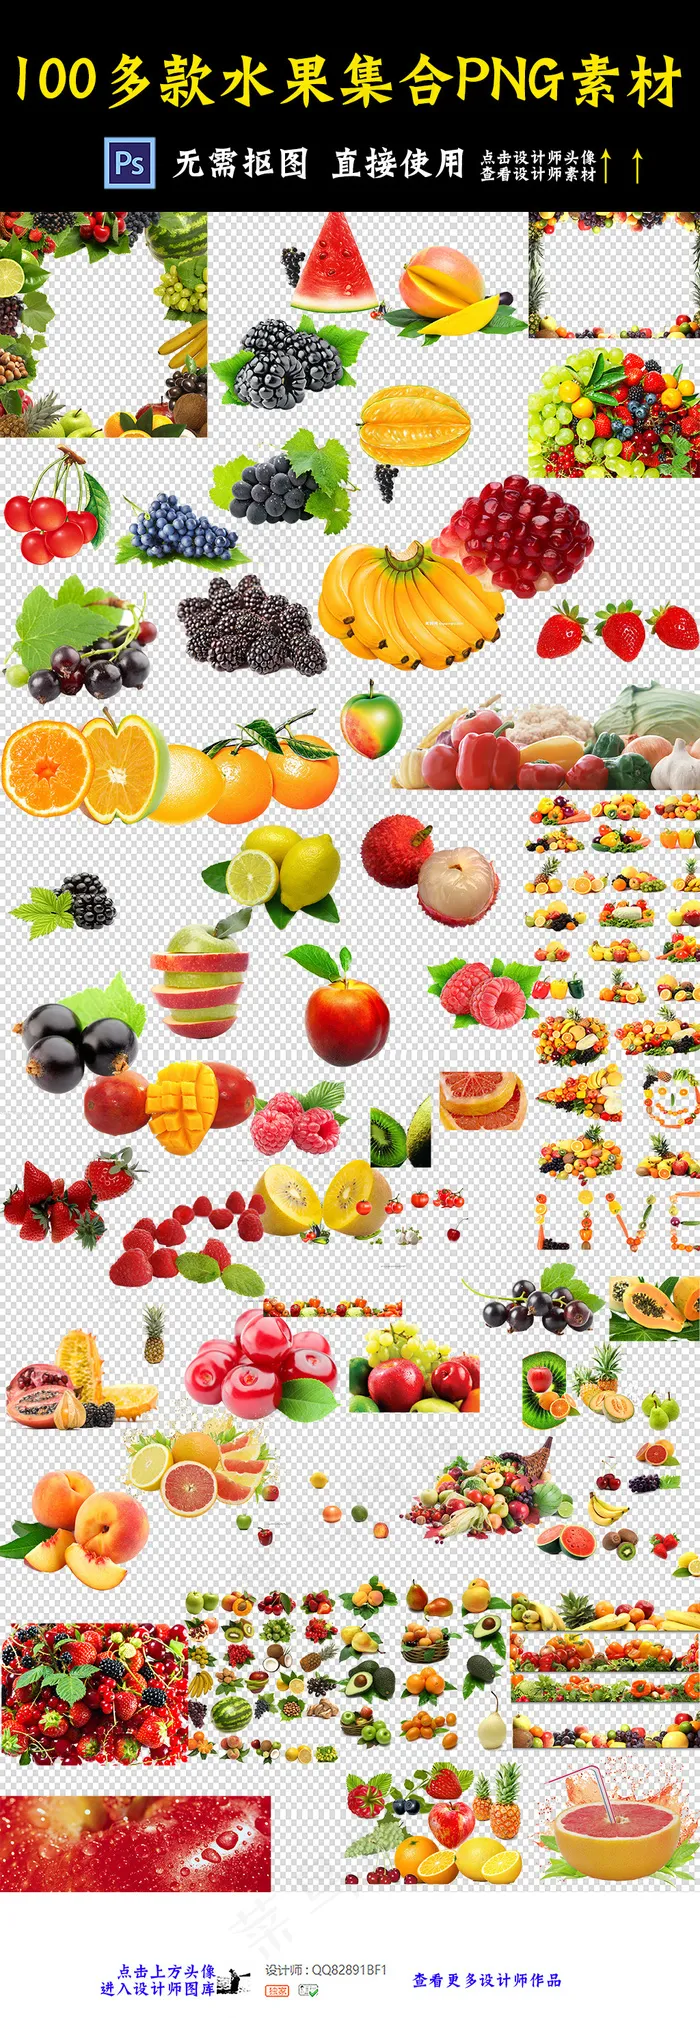 多种水果素材水果集合素材大全水果免...